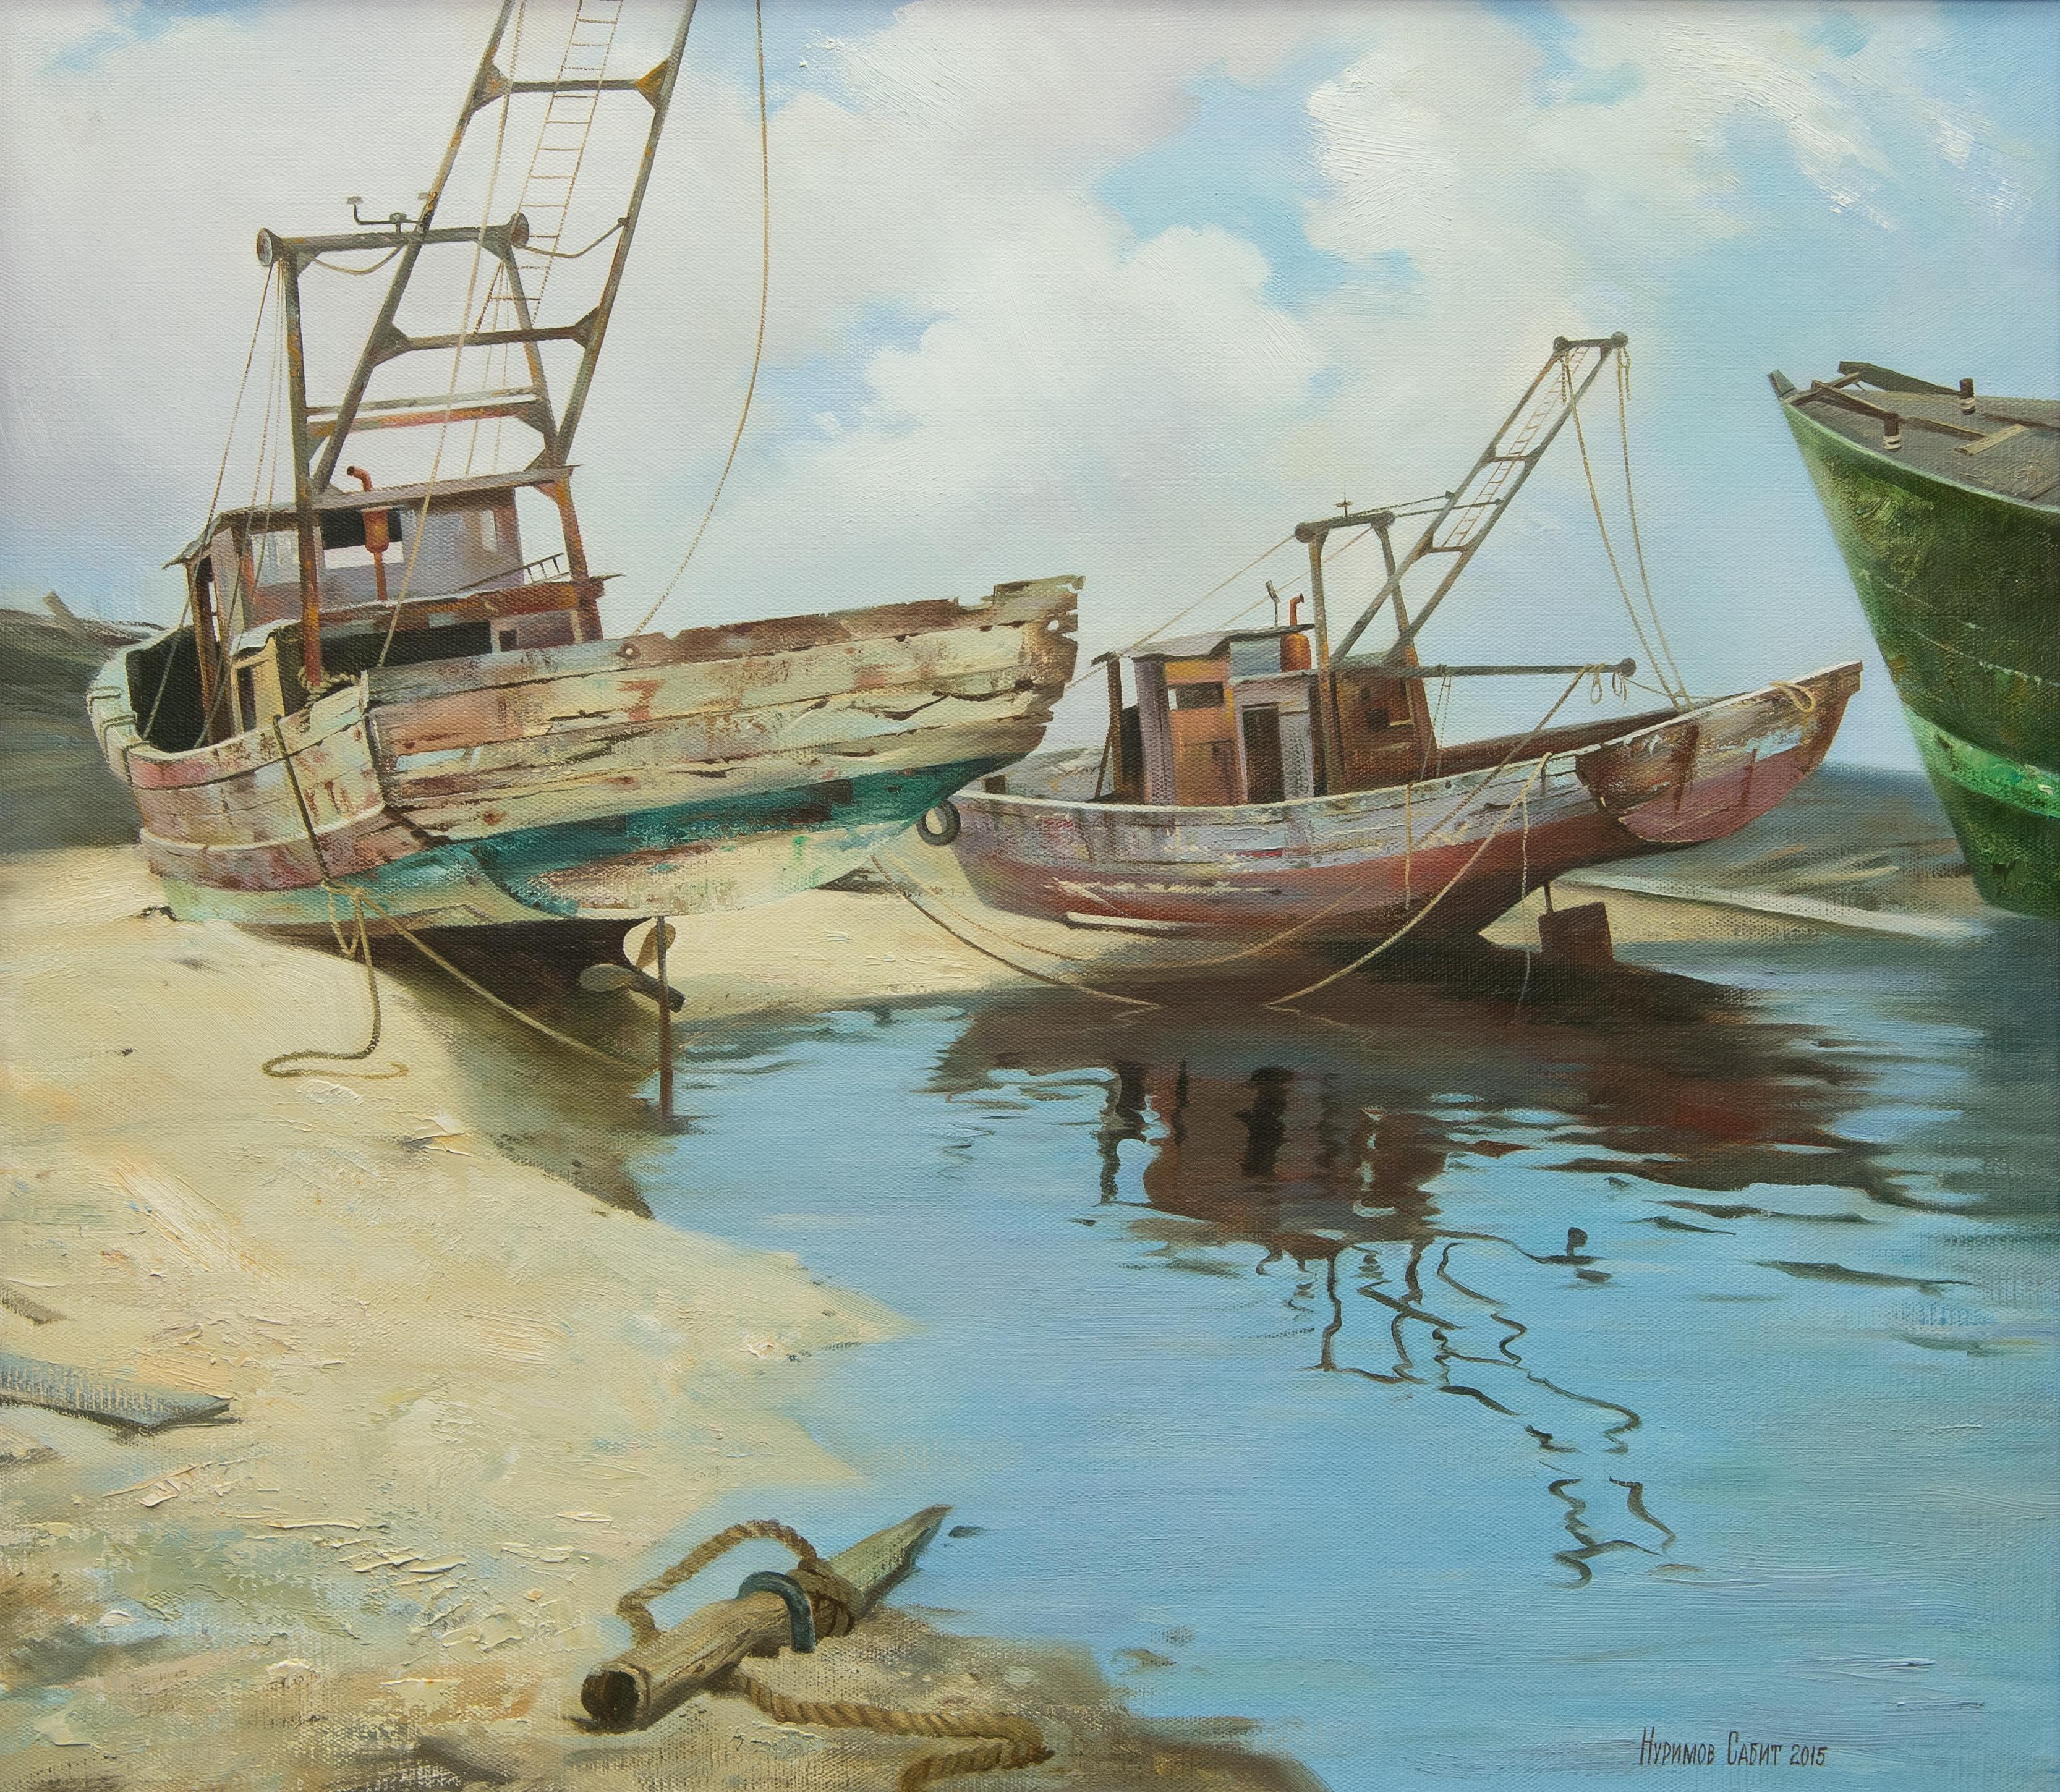 海岸上的船只. Original modern art painting